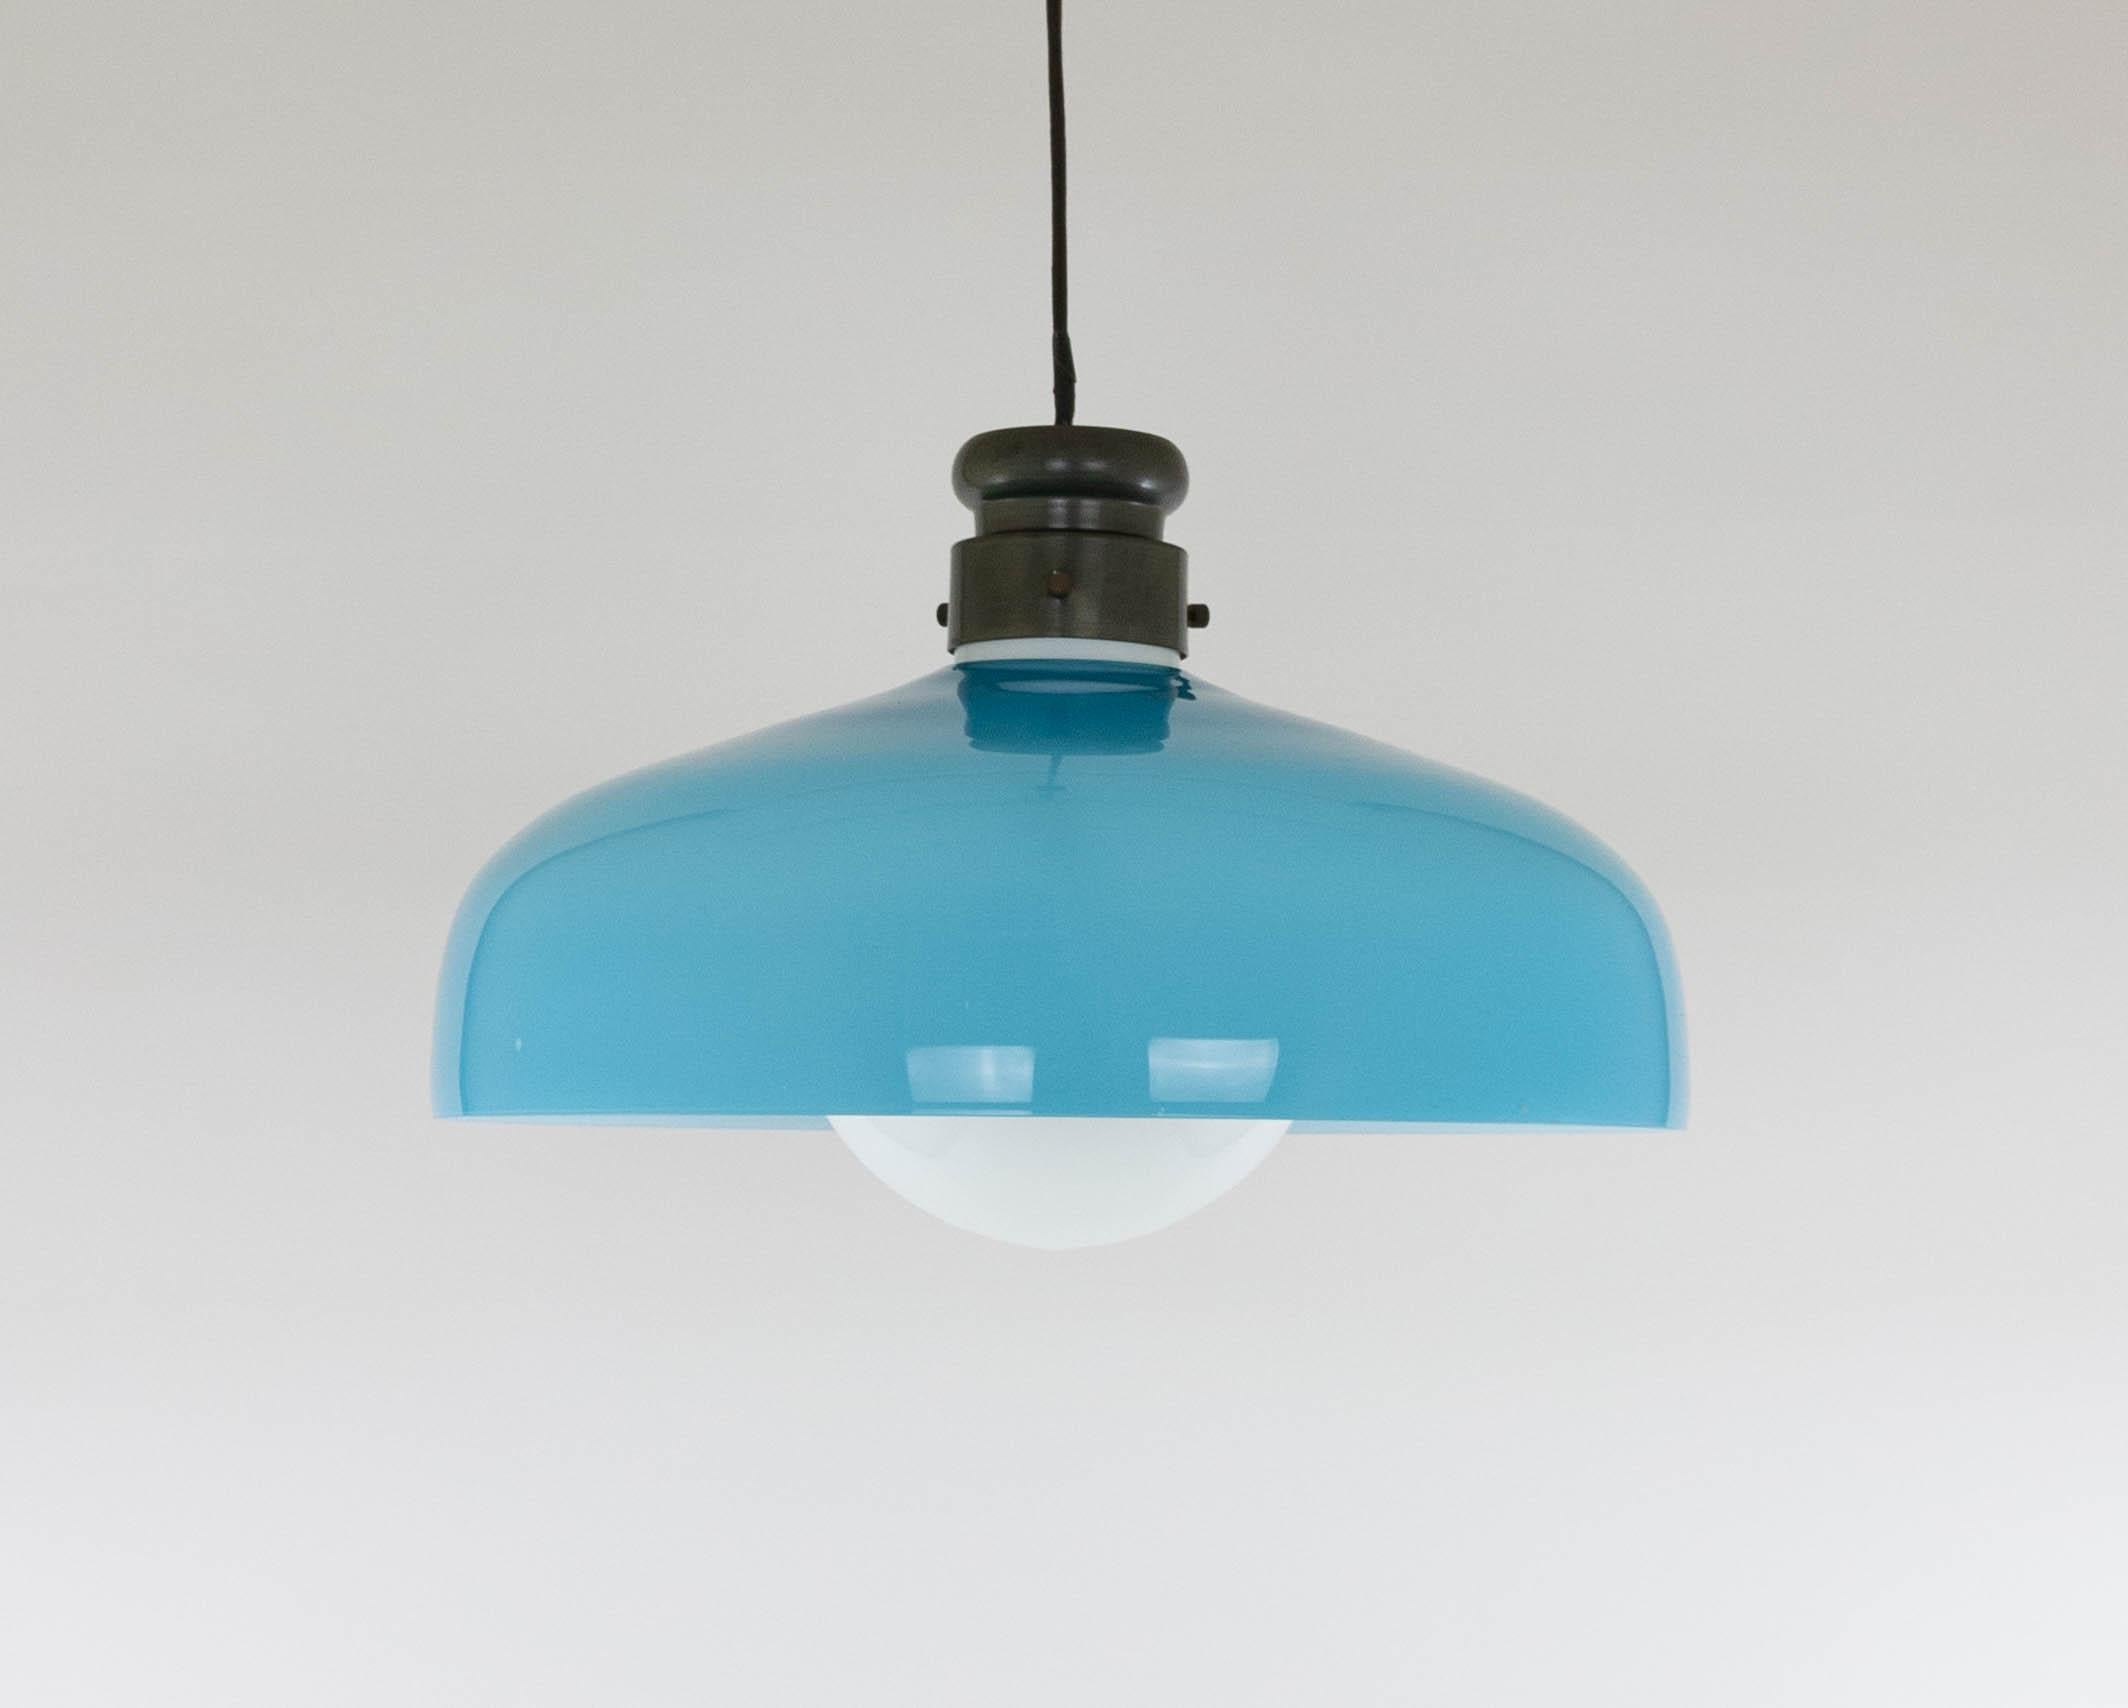 Grande suspension en verre Model L 72 conçue dans les années 1960 par Alessandro Pianon pour Vetreria Vistosi à Murano.

La lampe est en très bon état vintage et est livrée avec le cache plafond métallique d'origine. 